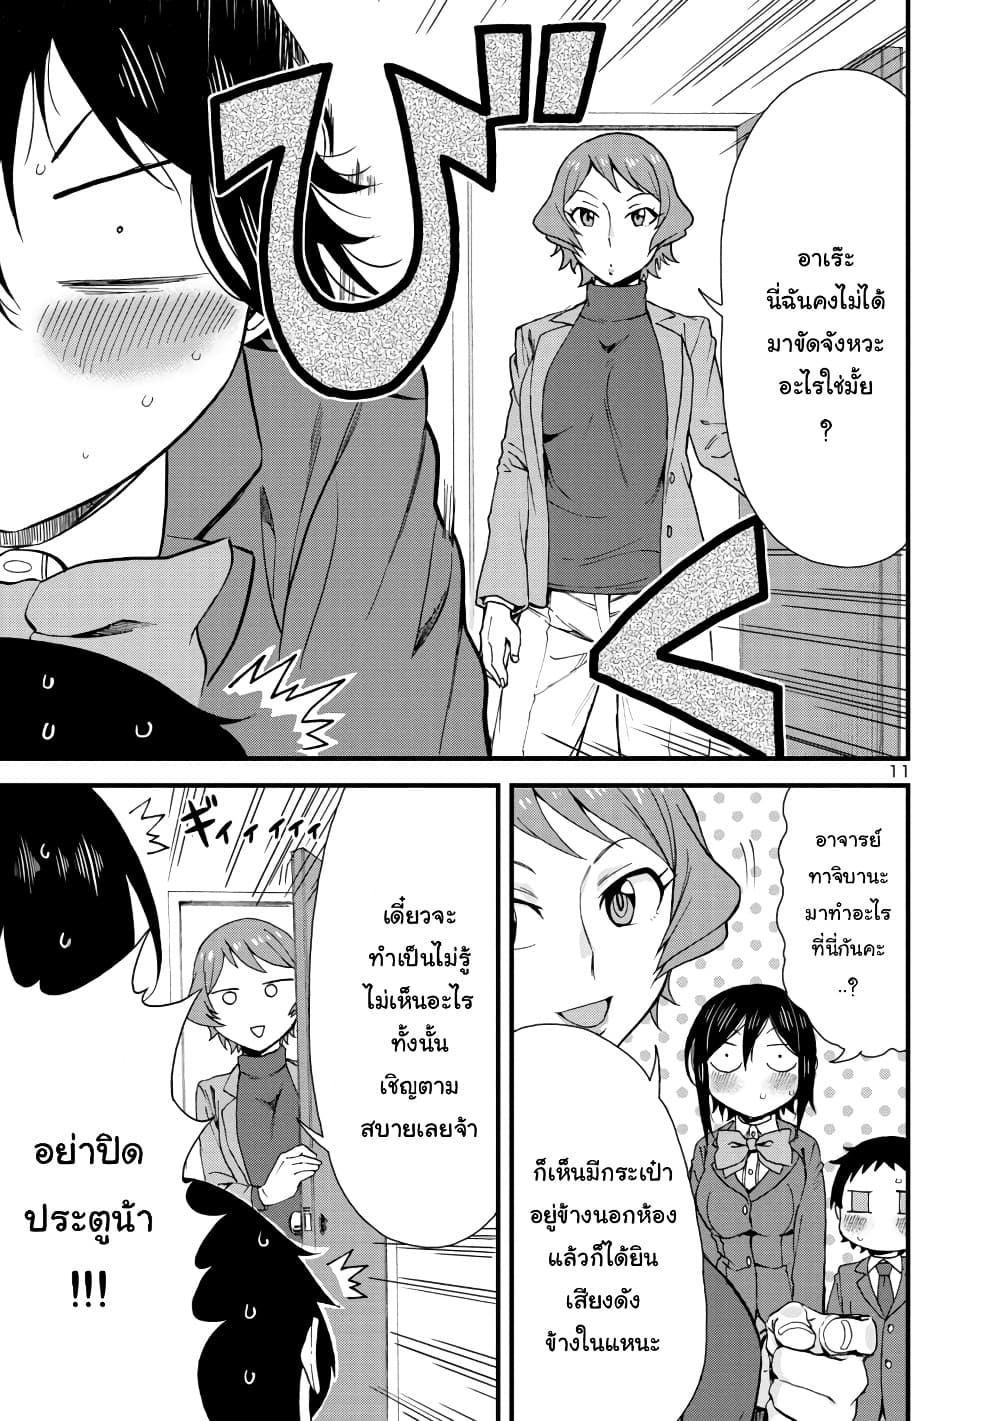 Hitomi-chan Is Shy With Strangers วันๆของน้องฮิโตมิก็เป็นแบบนี้แหล่ะ 39-39